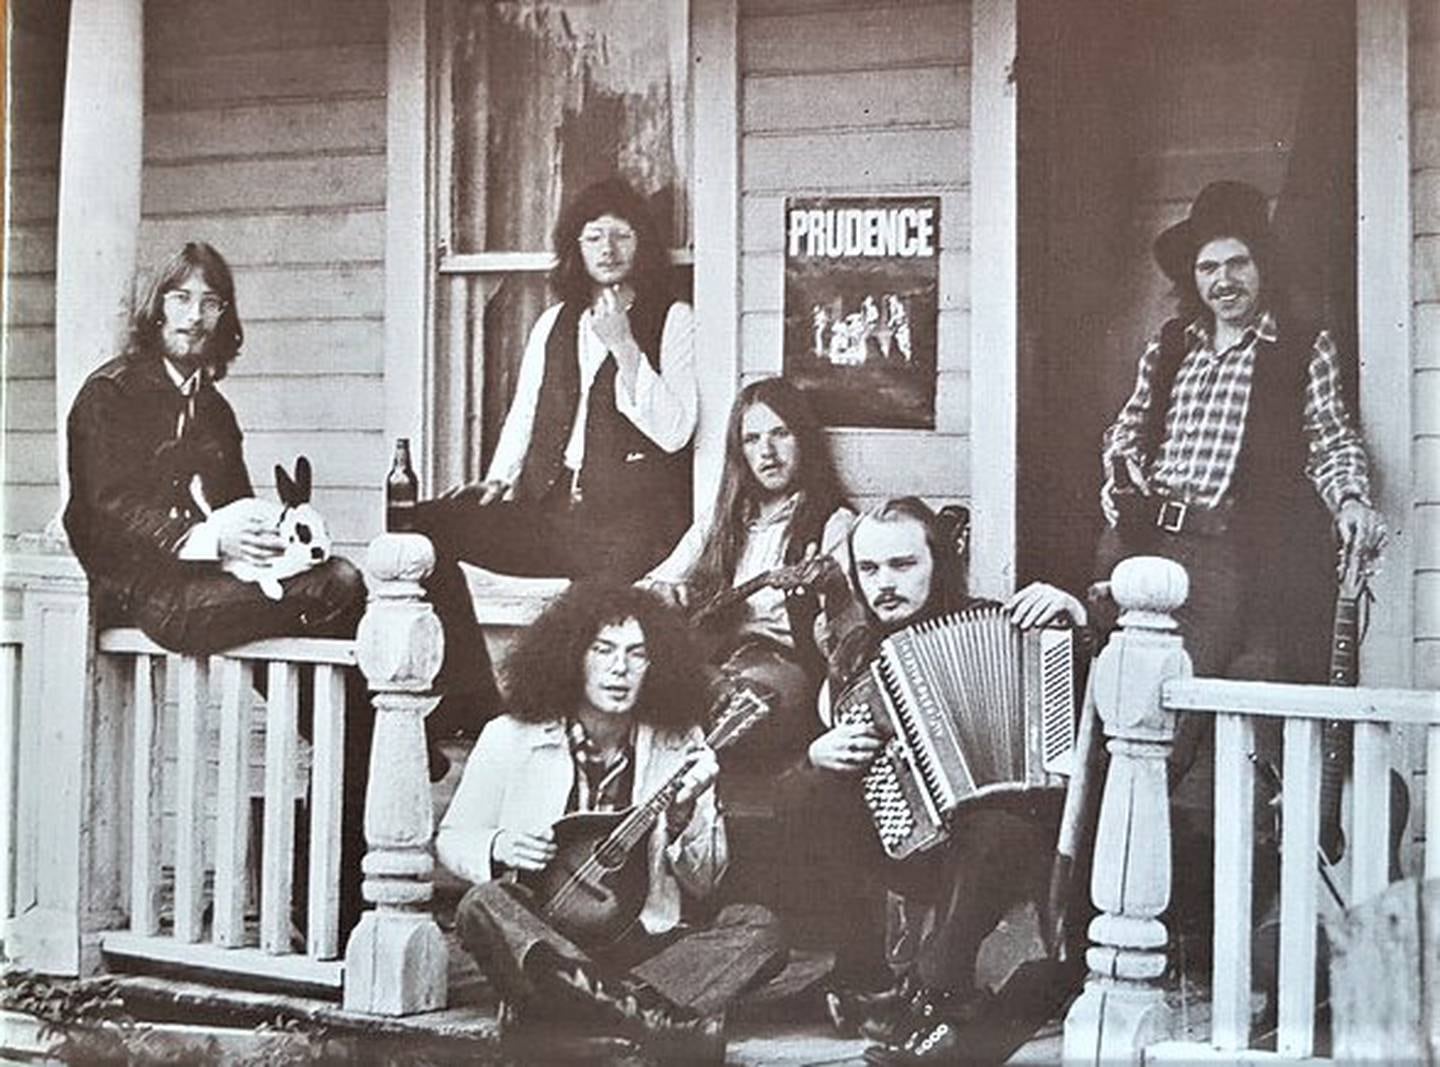 Prudence på omslaget til debutalbumet "Tomorrow May Be Vanished", som kom ut i oktober 1972.